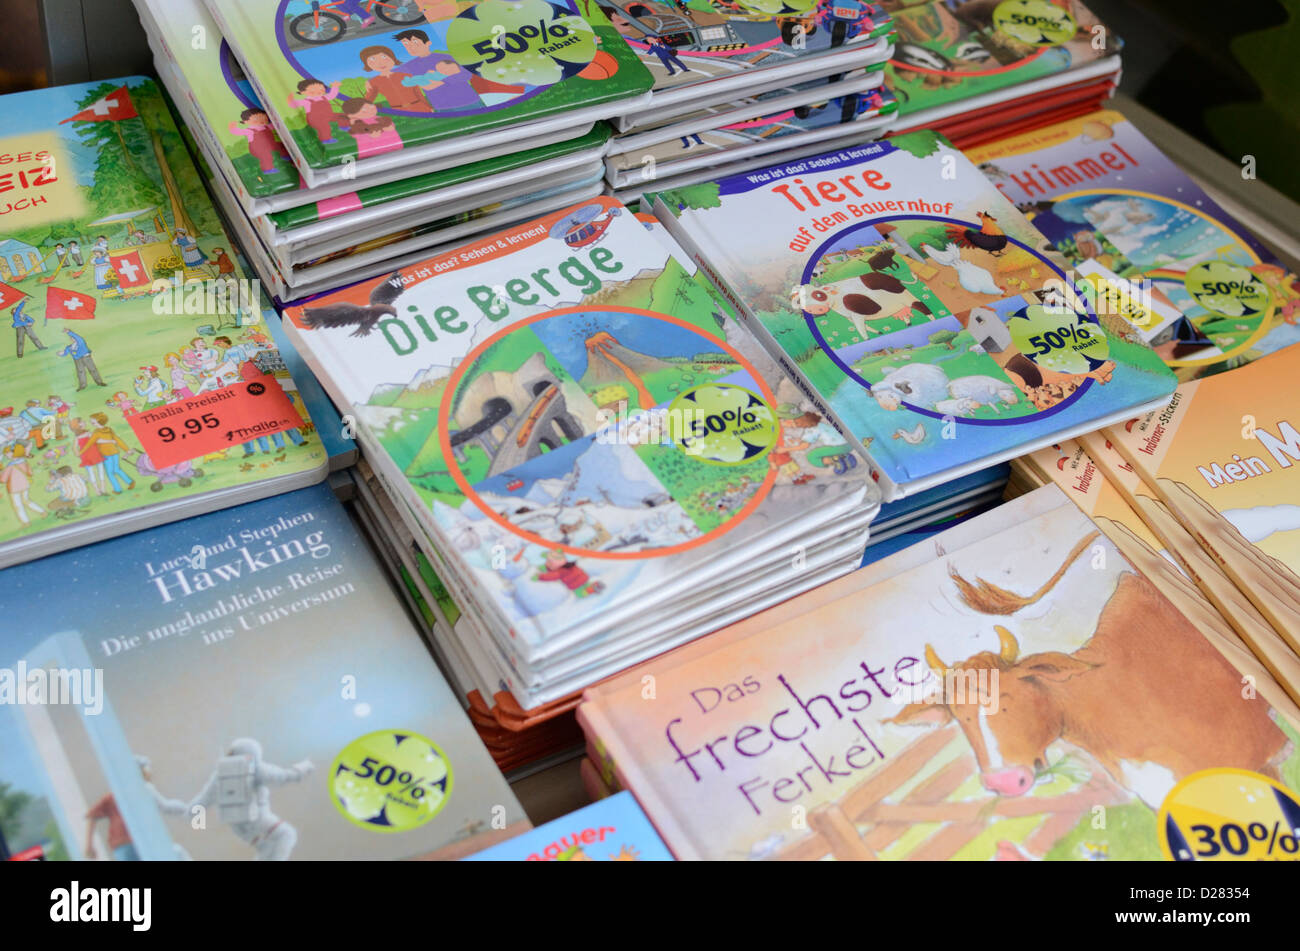 Une exposition de livres pour enfants Suisse Banque D'Images